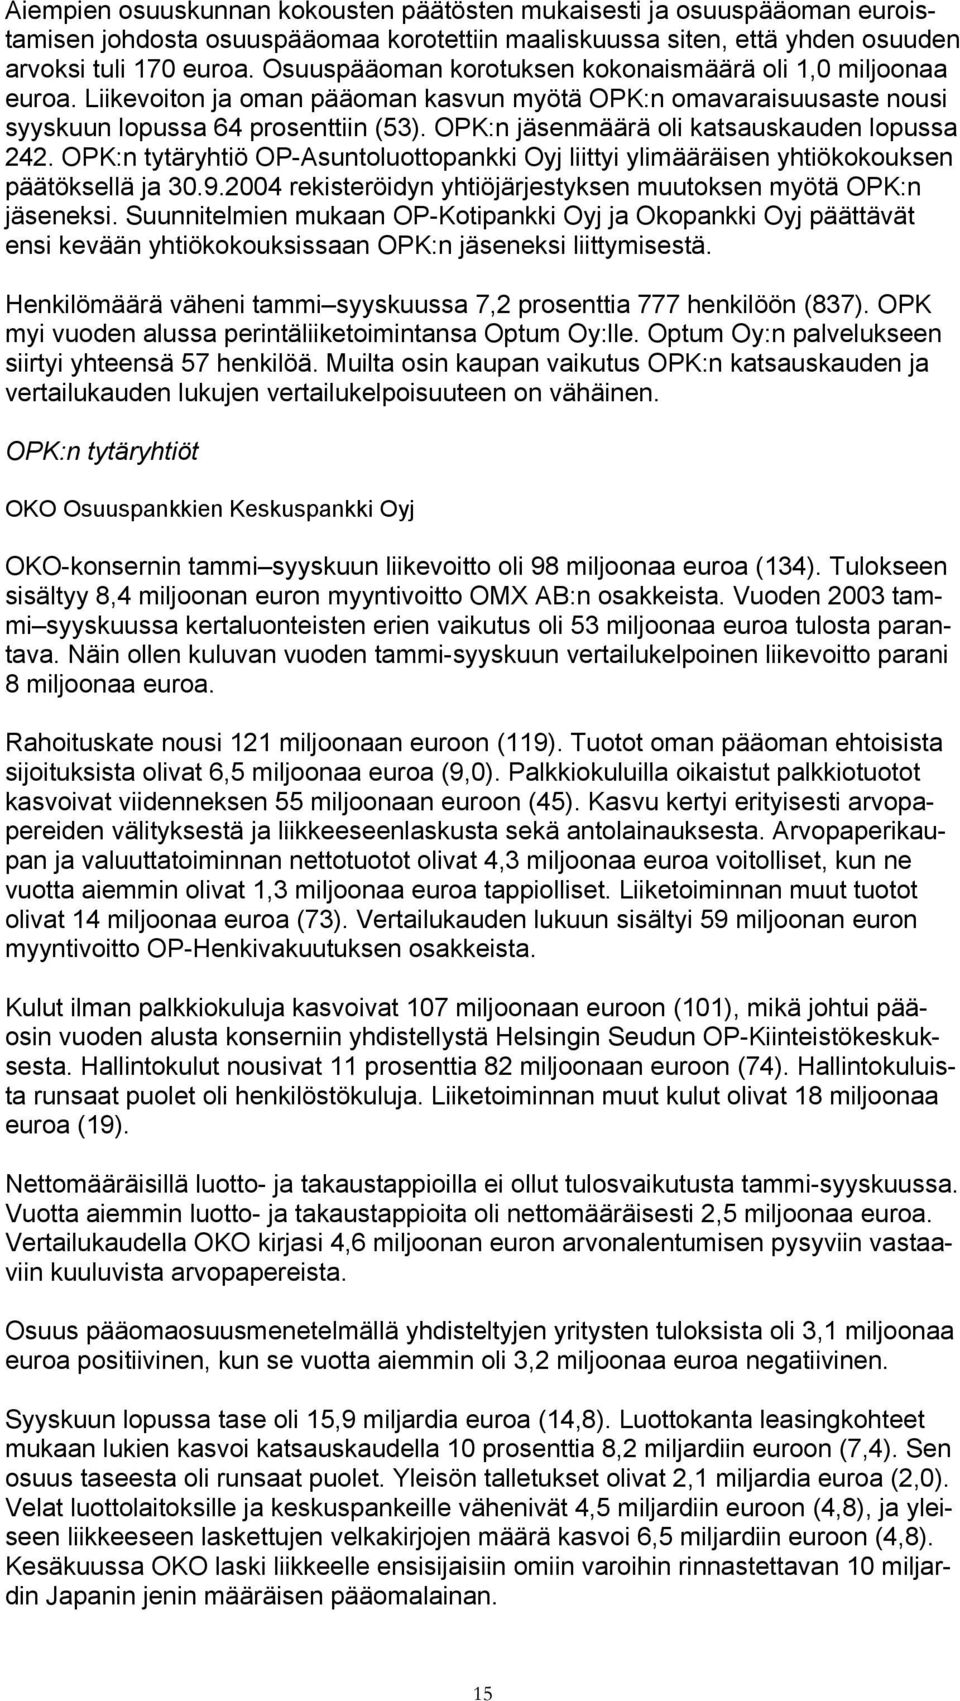 OPK:n jäsenmäärä oli katsauskauden lopussa 242. OPK:n tytäryhtiö OP-Asuntoluottopankki Oyj liittyi ylimääräisen yhtiökokouksen päätöksellä ja 30.9.